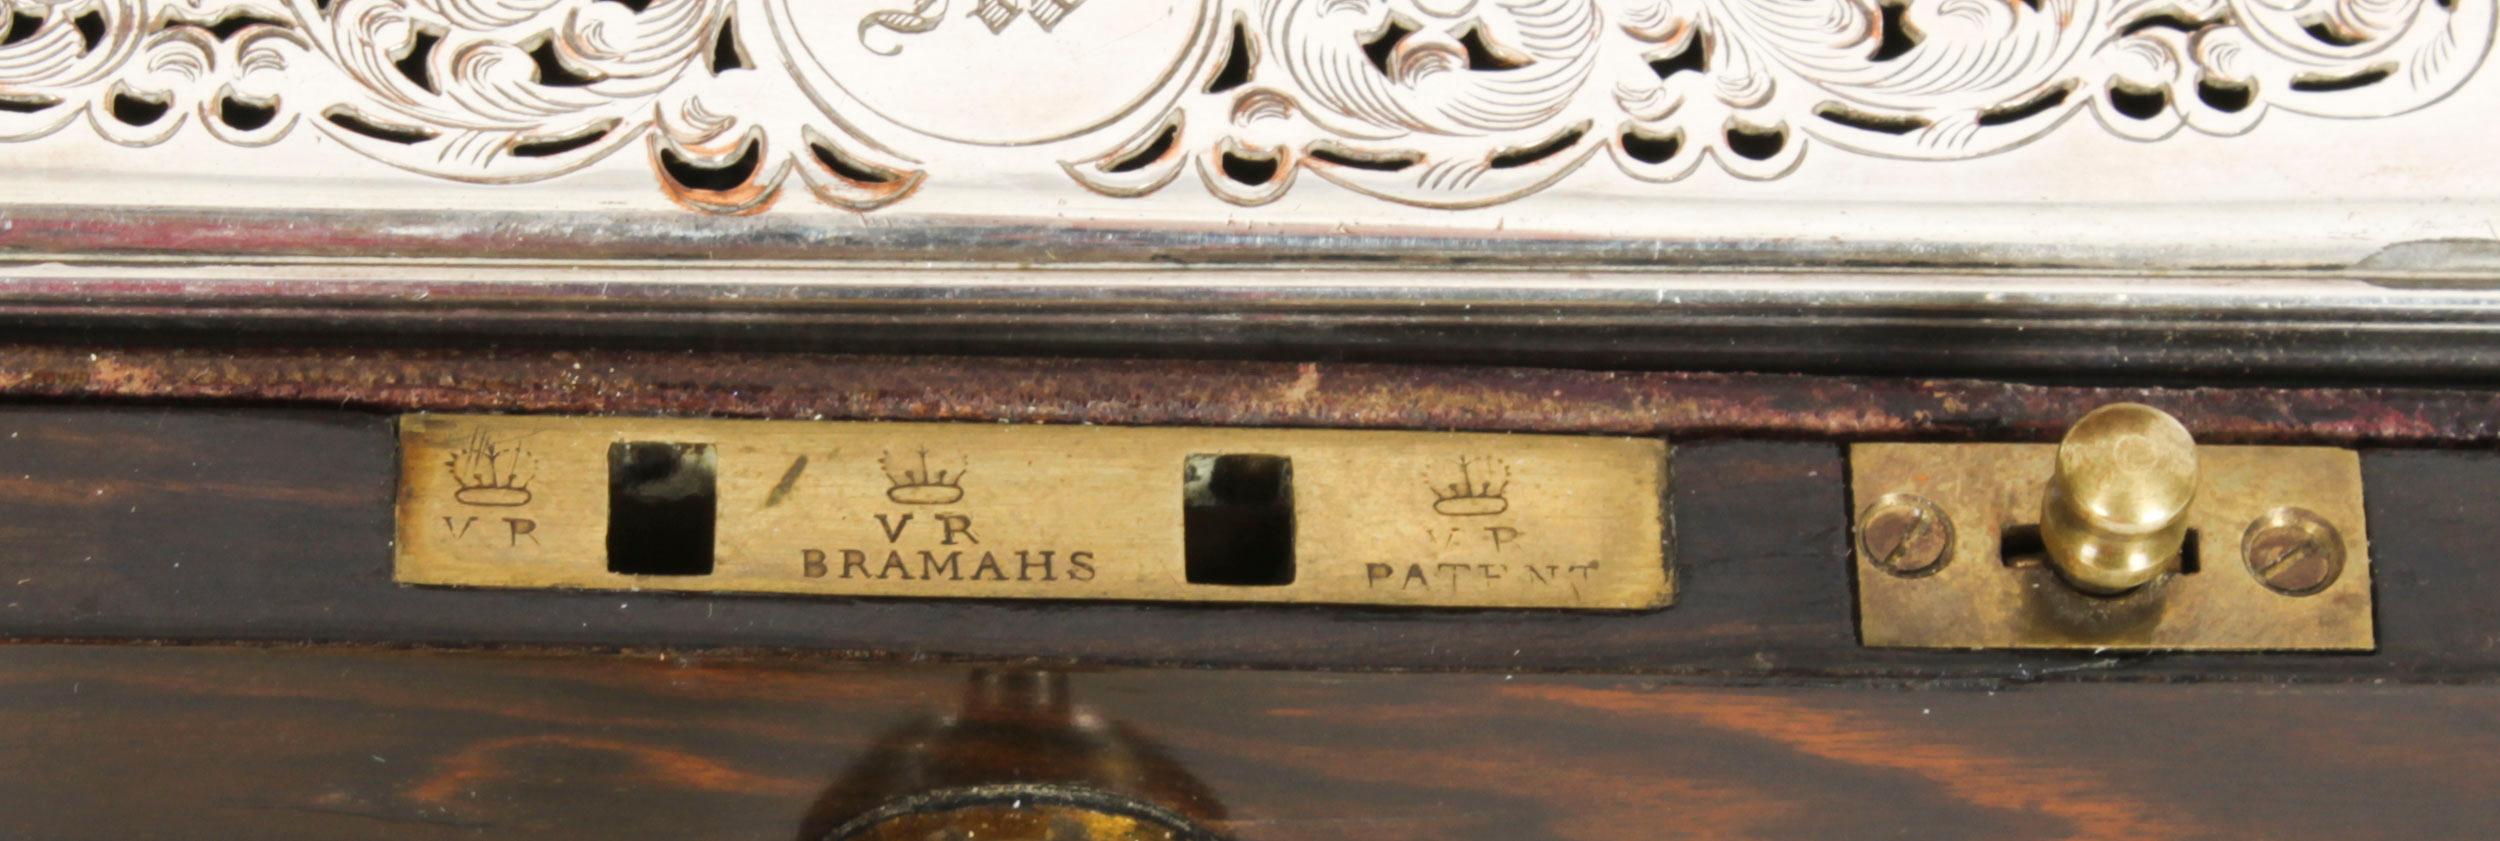 Antique Victorian Coromandel Gentleman's Travelling Vanity Case 19th C For Sale 2